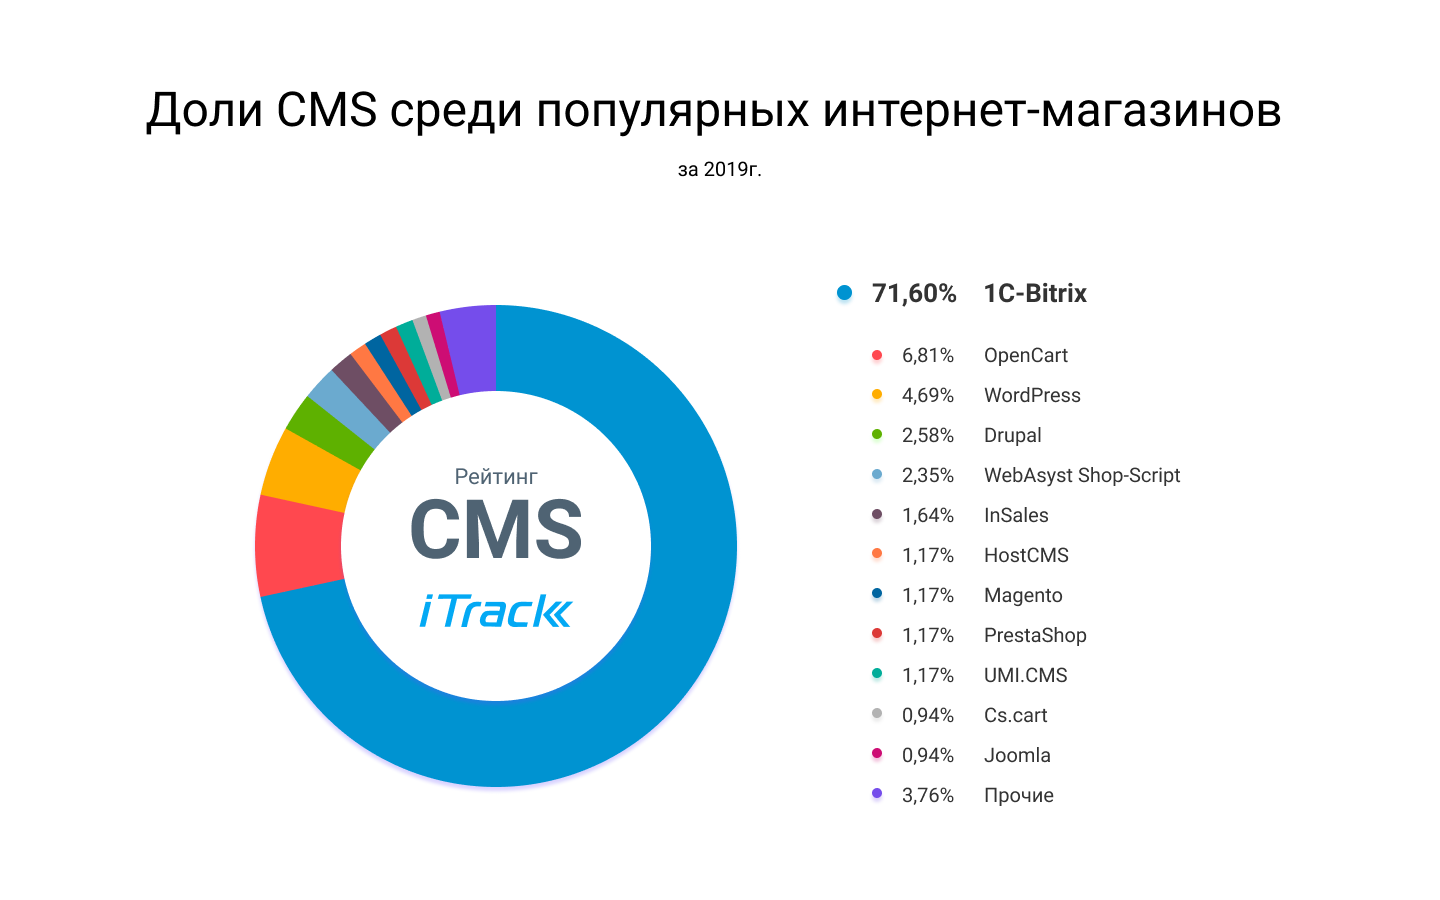 Рейтинг CMS среди популярных интернет-магазинов в России - инфографика